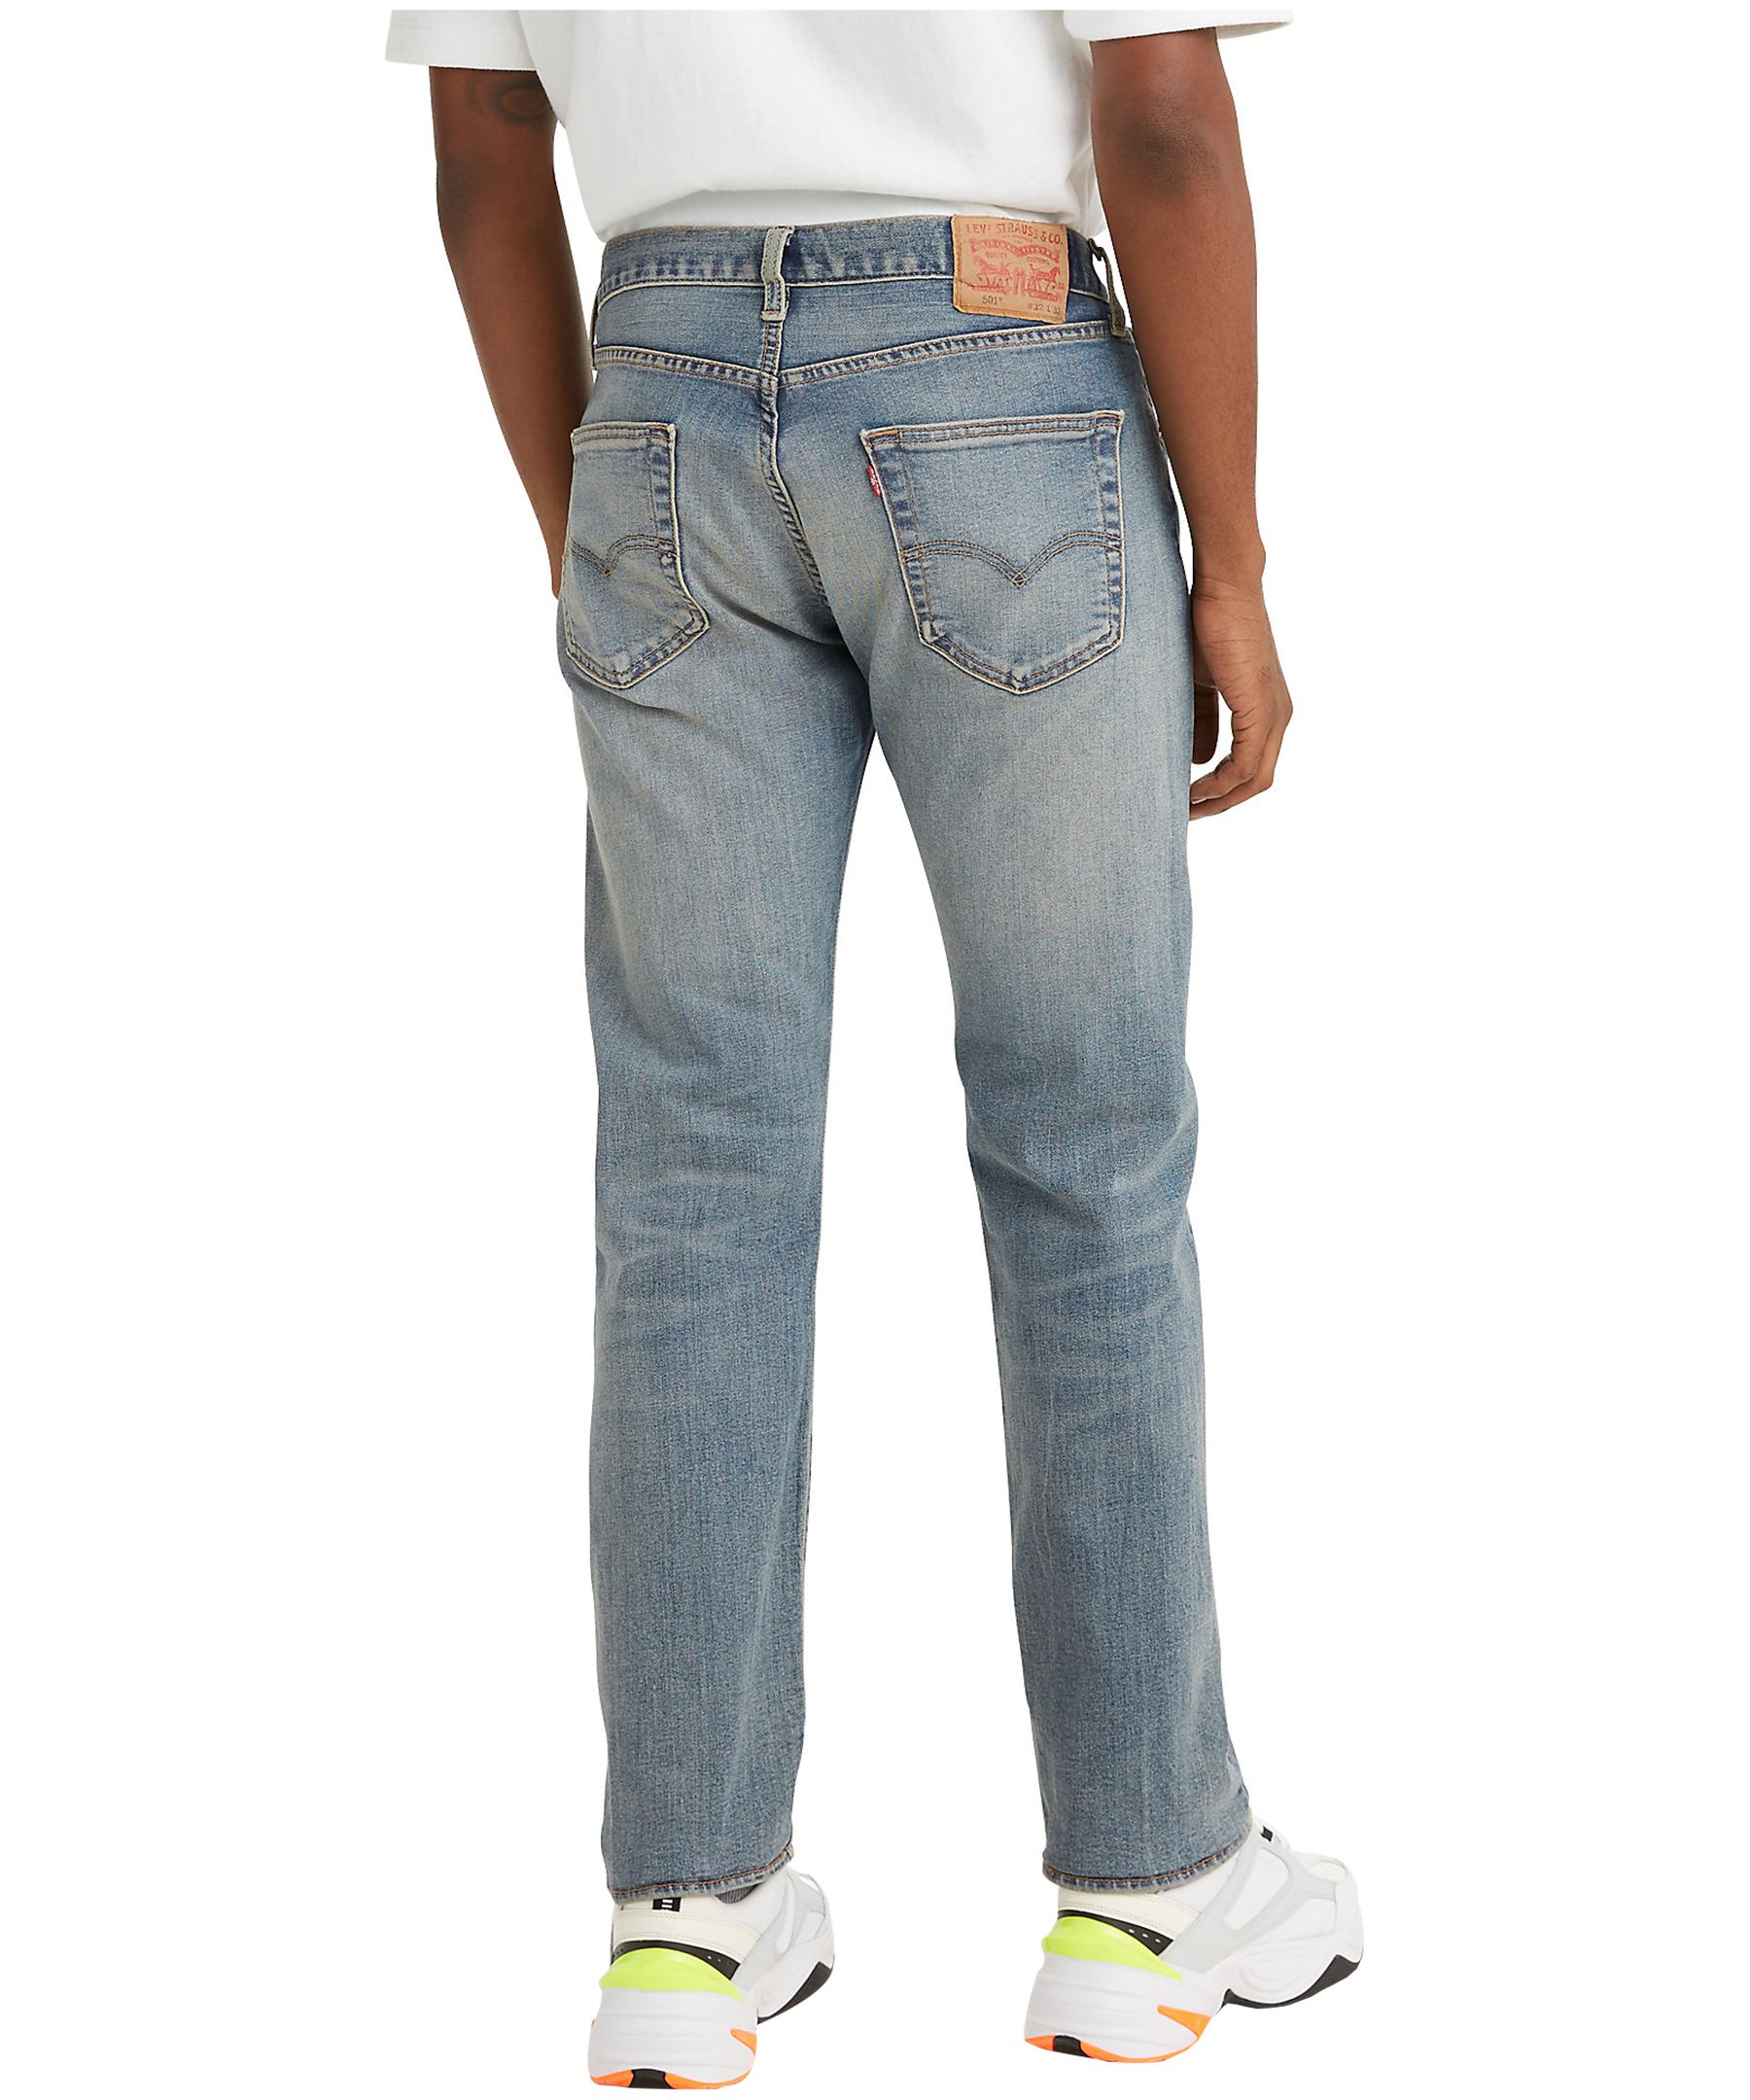 Levi's Men's 501 Original Mid Rise Straight Fit Jeans